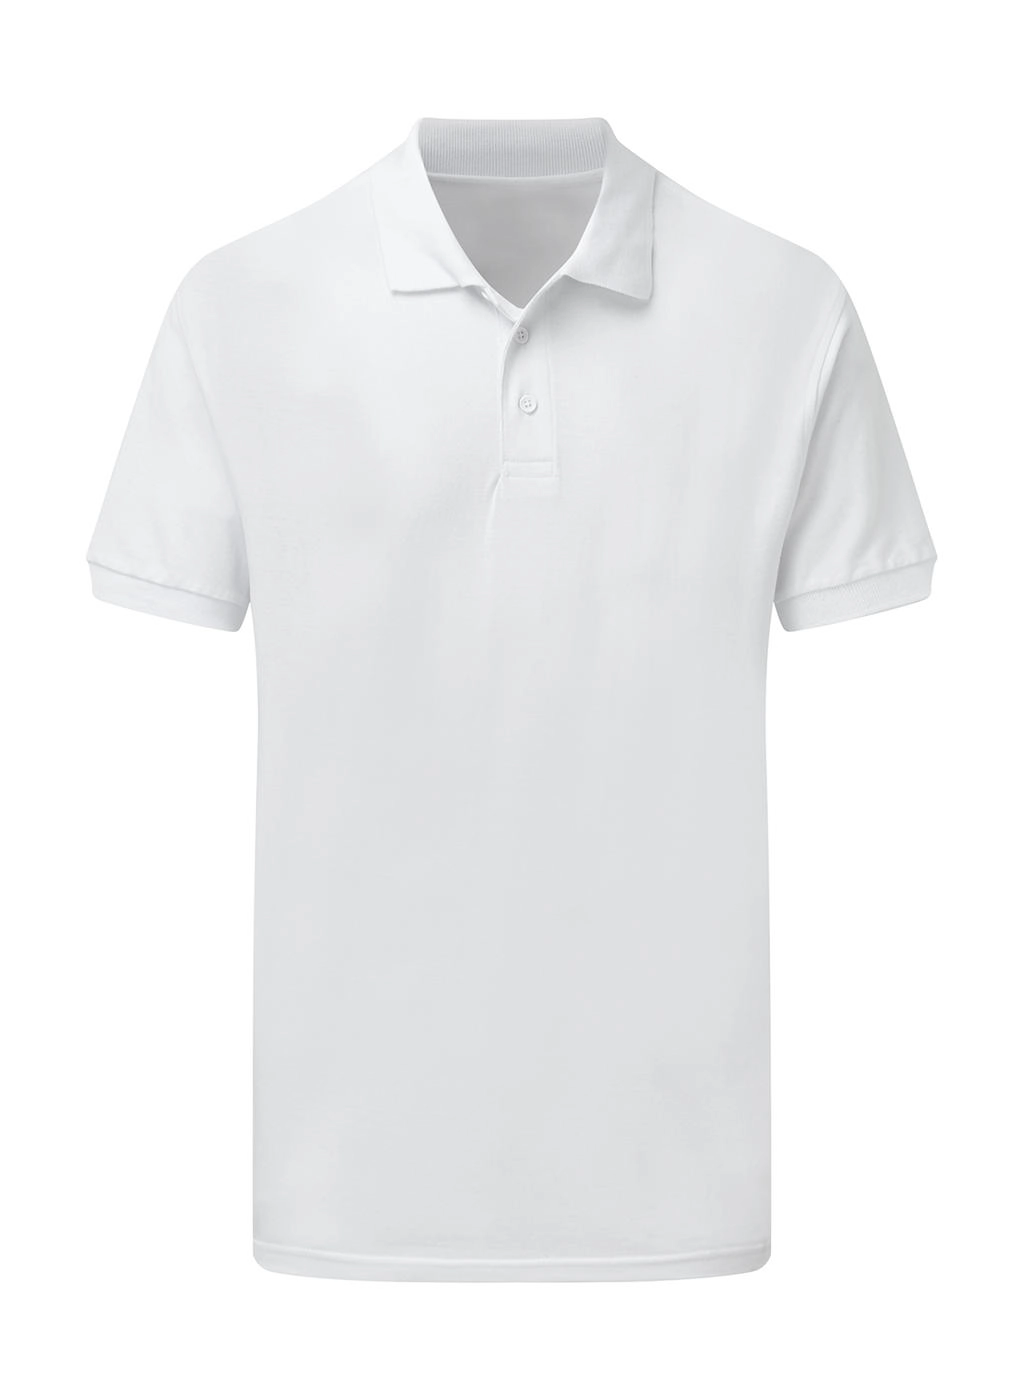 Cotton Polo Men zum Besticken und Bedrucken in der Farbe White mit Ihren Logo, Schriftzug oder Motiv.